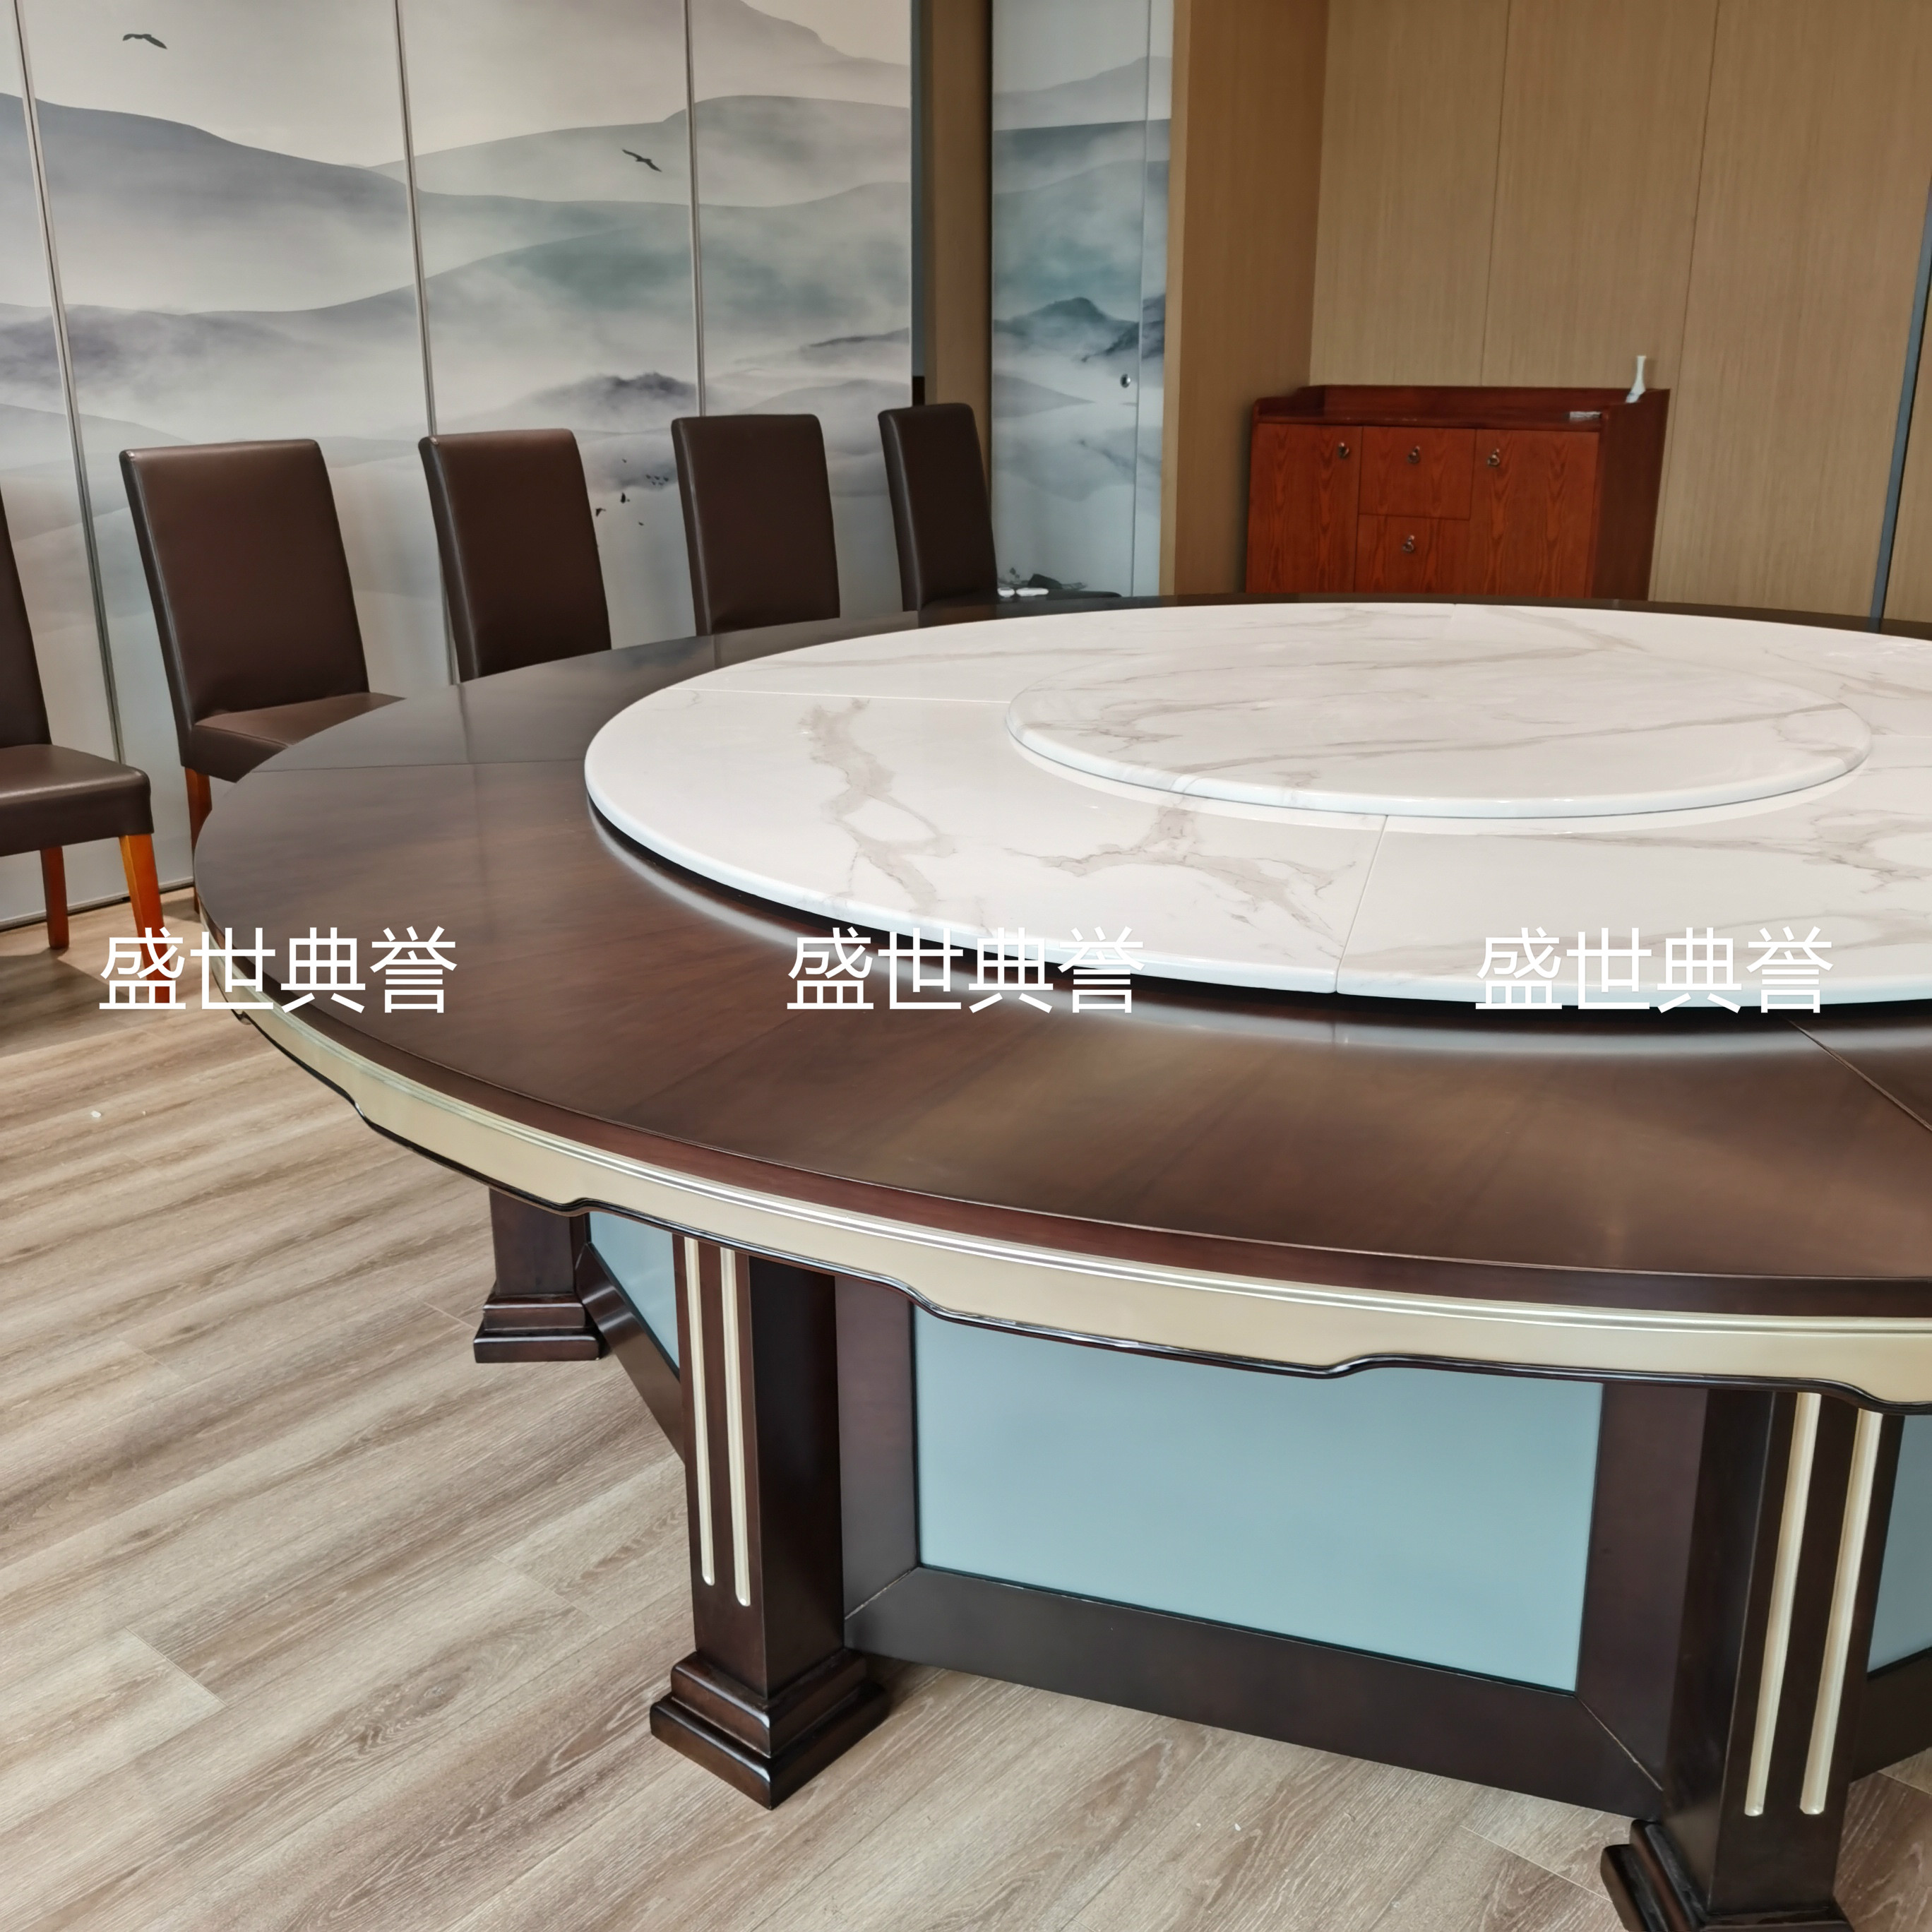 温州宴会中心包厢实木桌椅度假酒店新中式电动餐桌海鲜餐厅电动桌